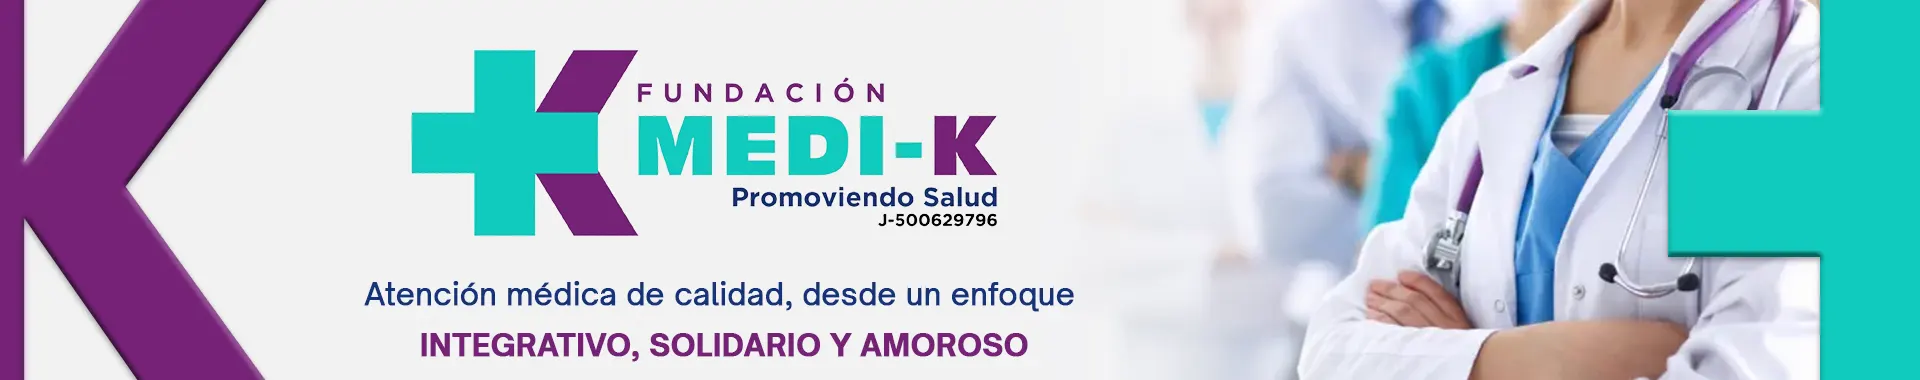 Imagen 1 del perfil de Fundación Medi - k